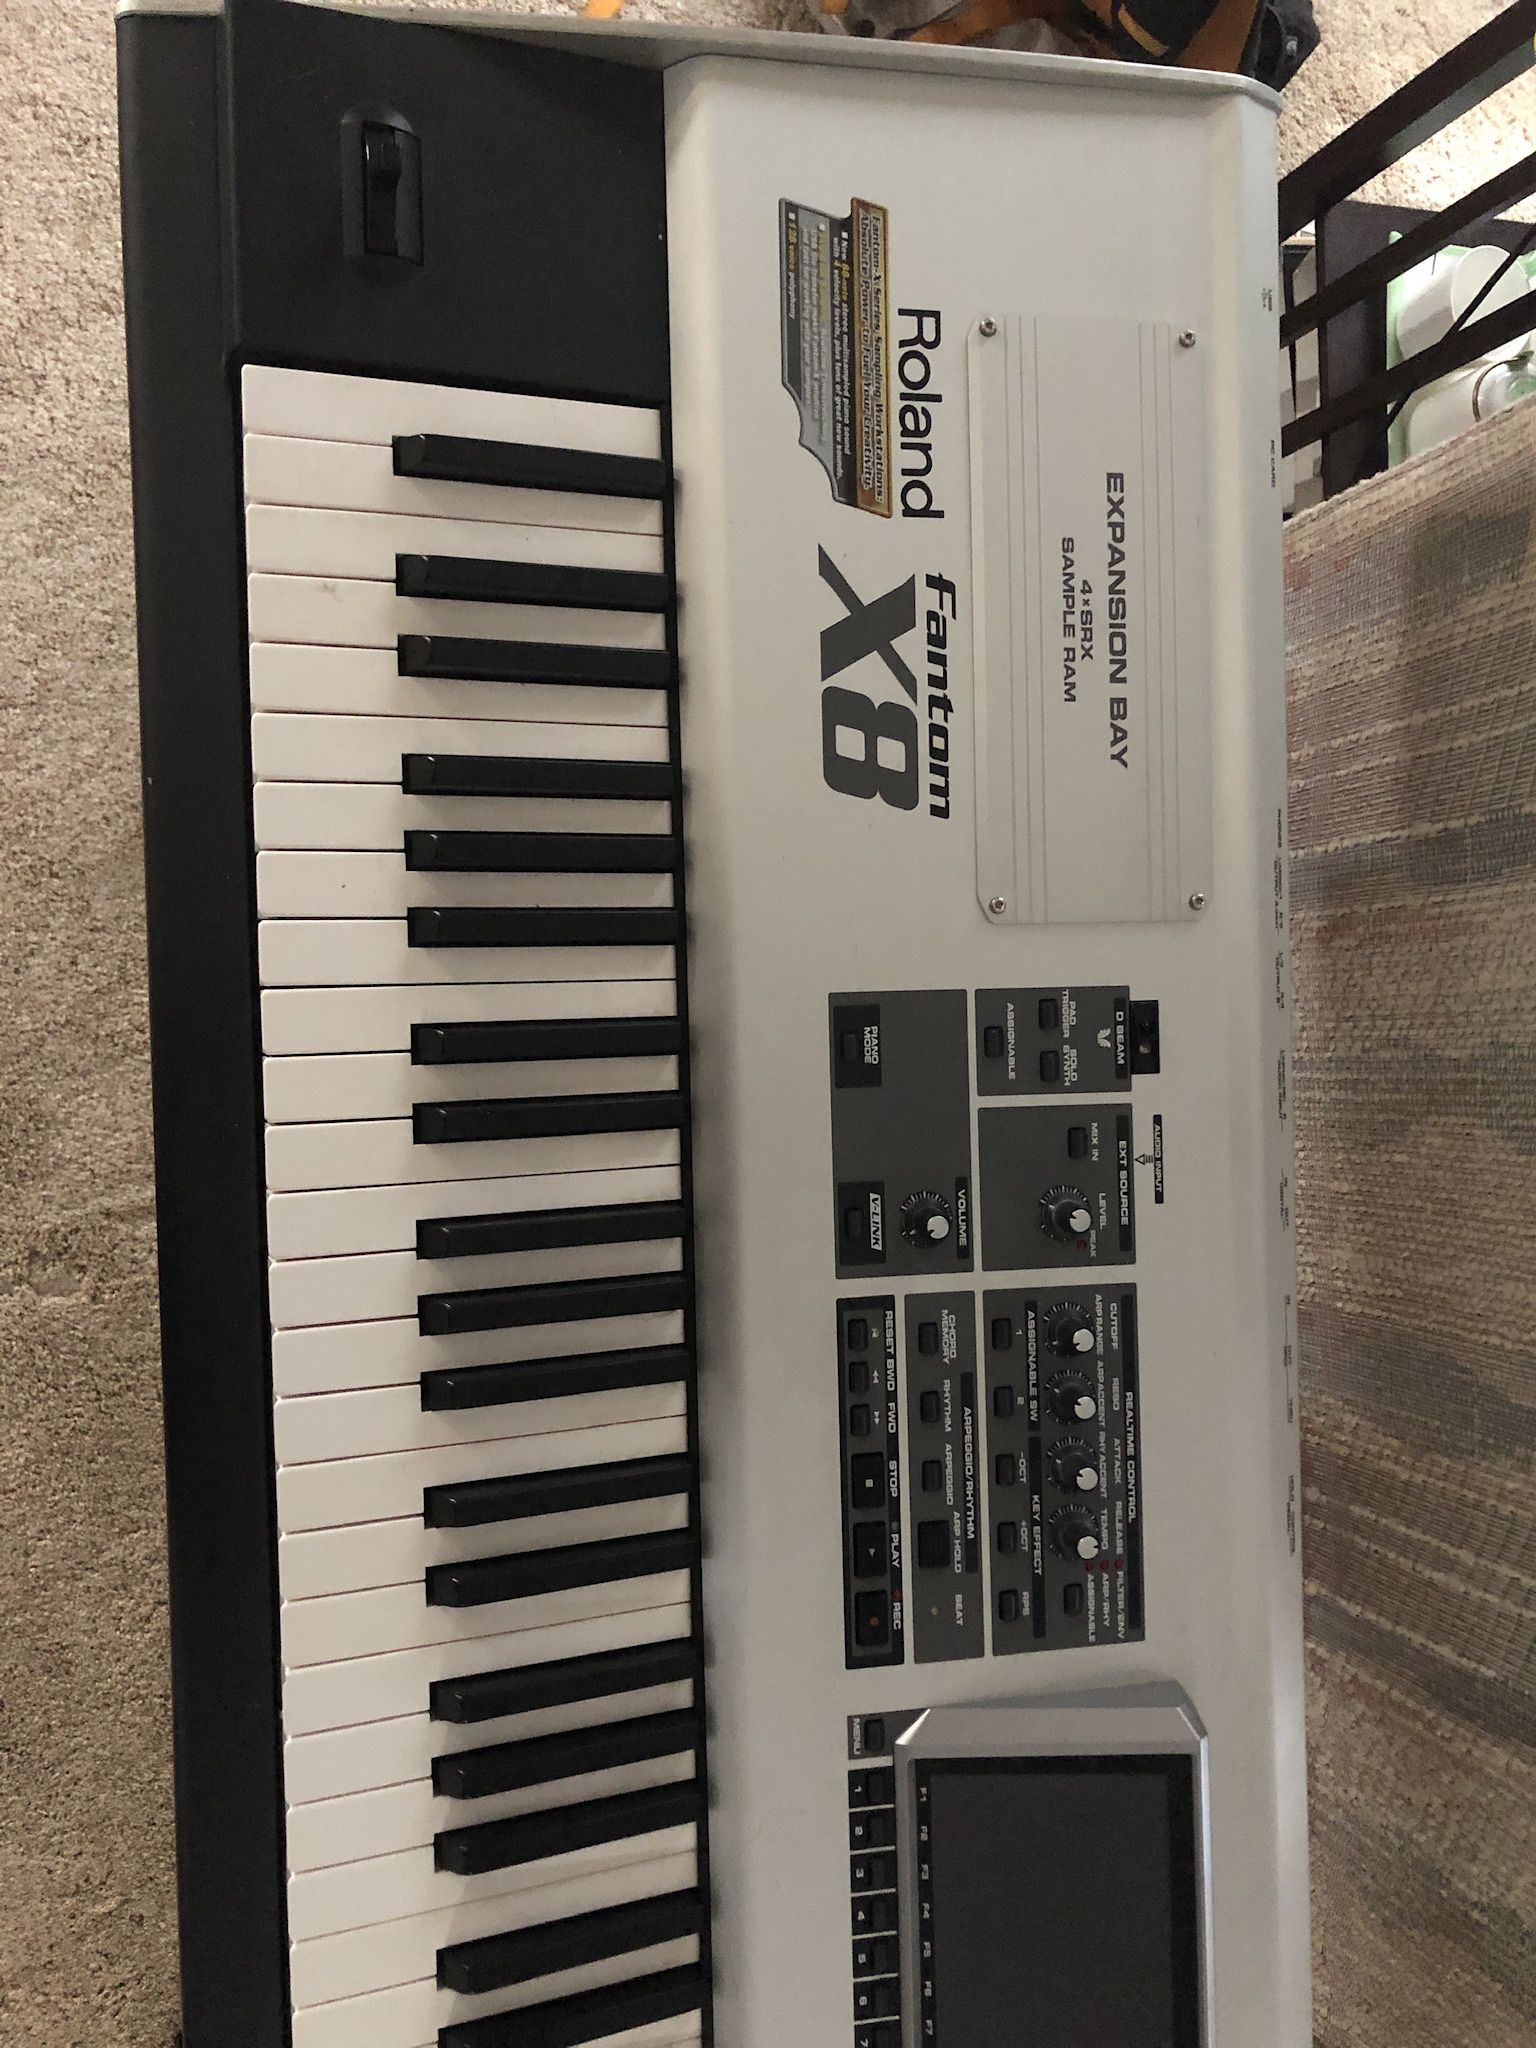 Roland Fantom X8 Keyboard